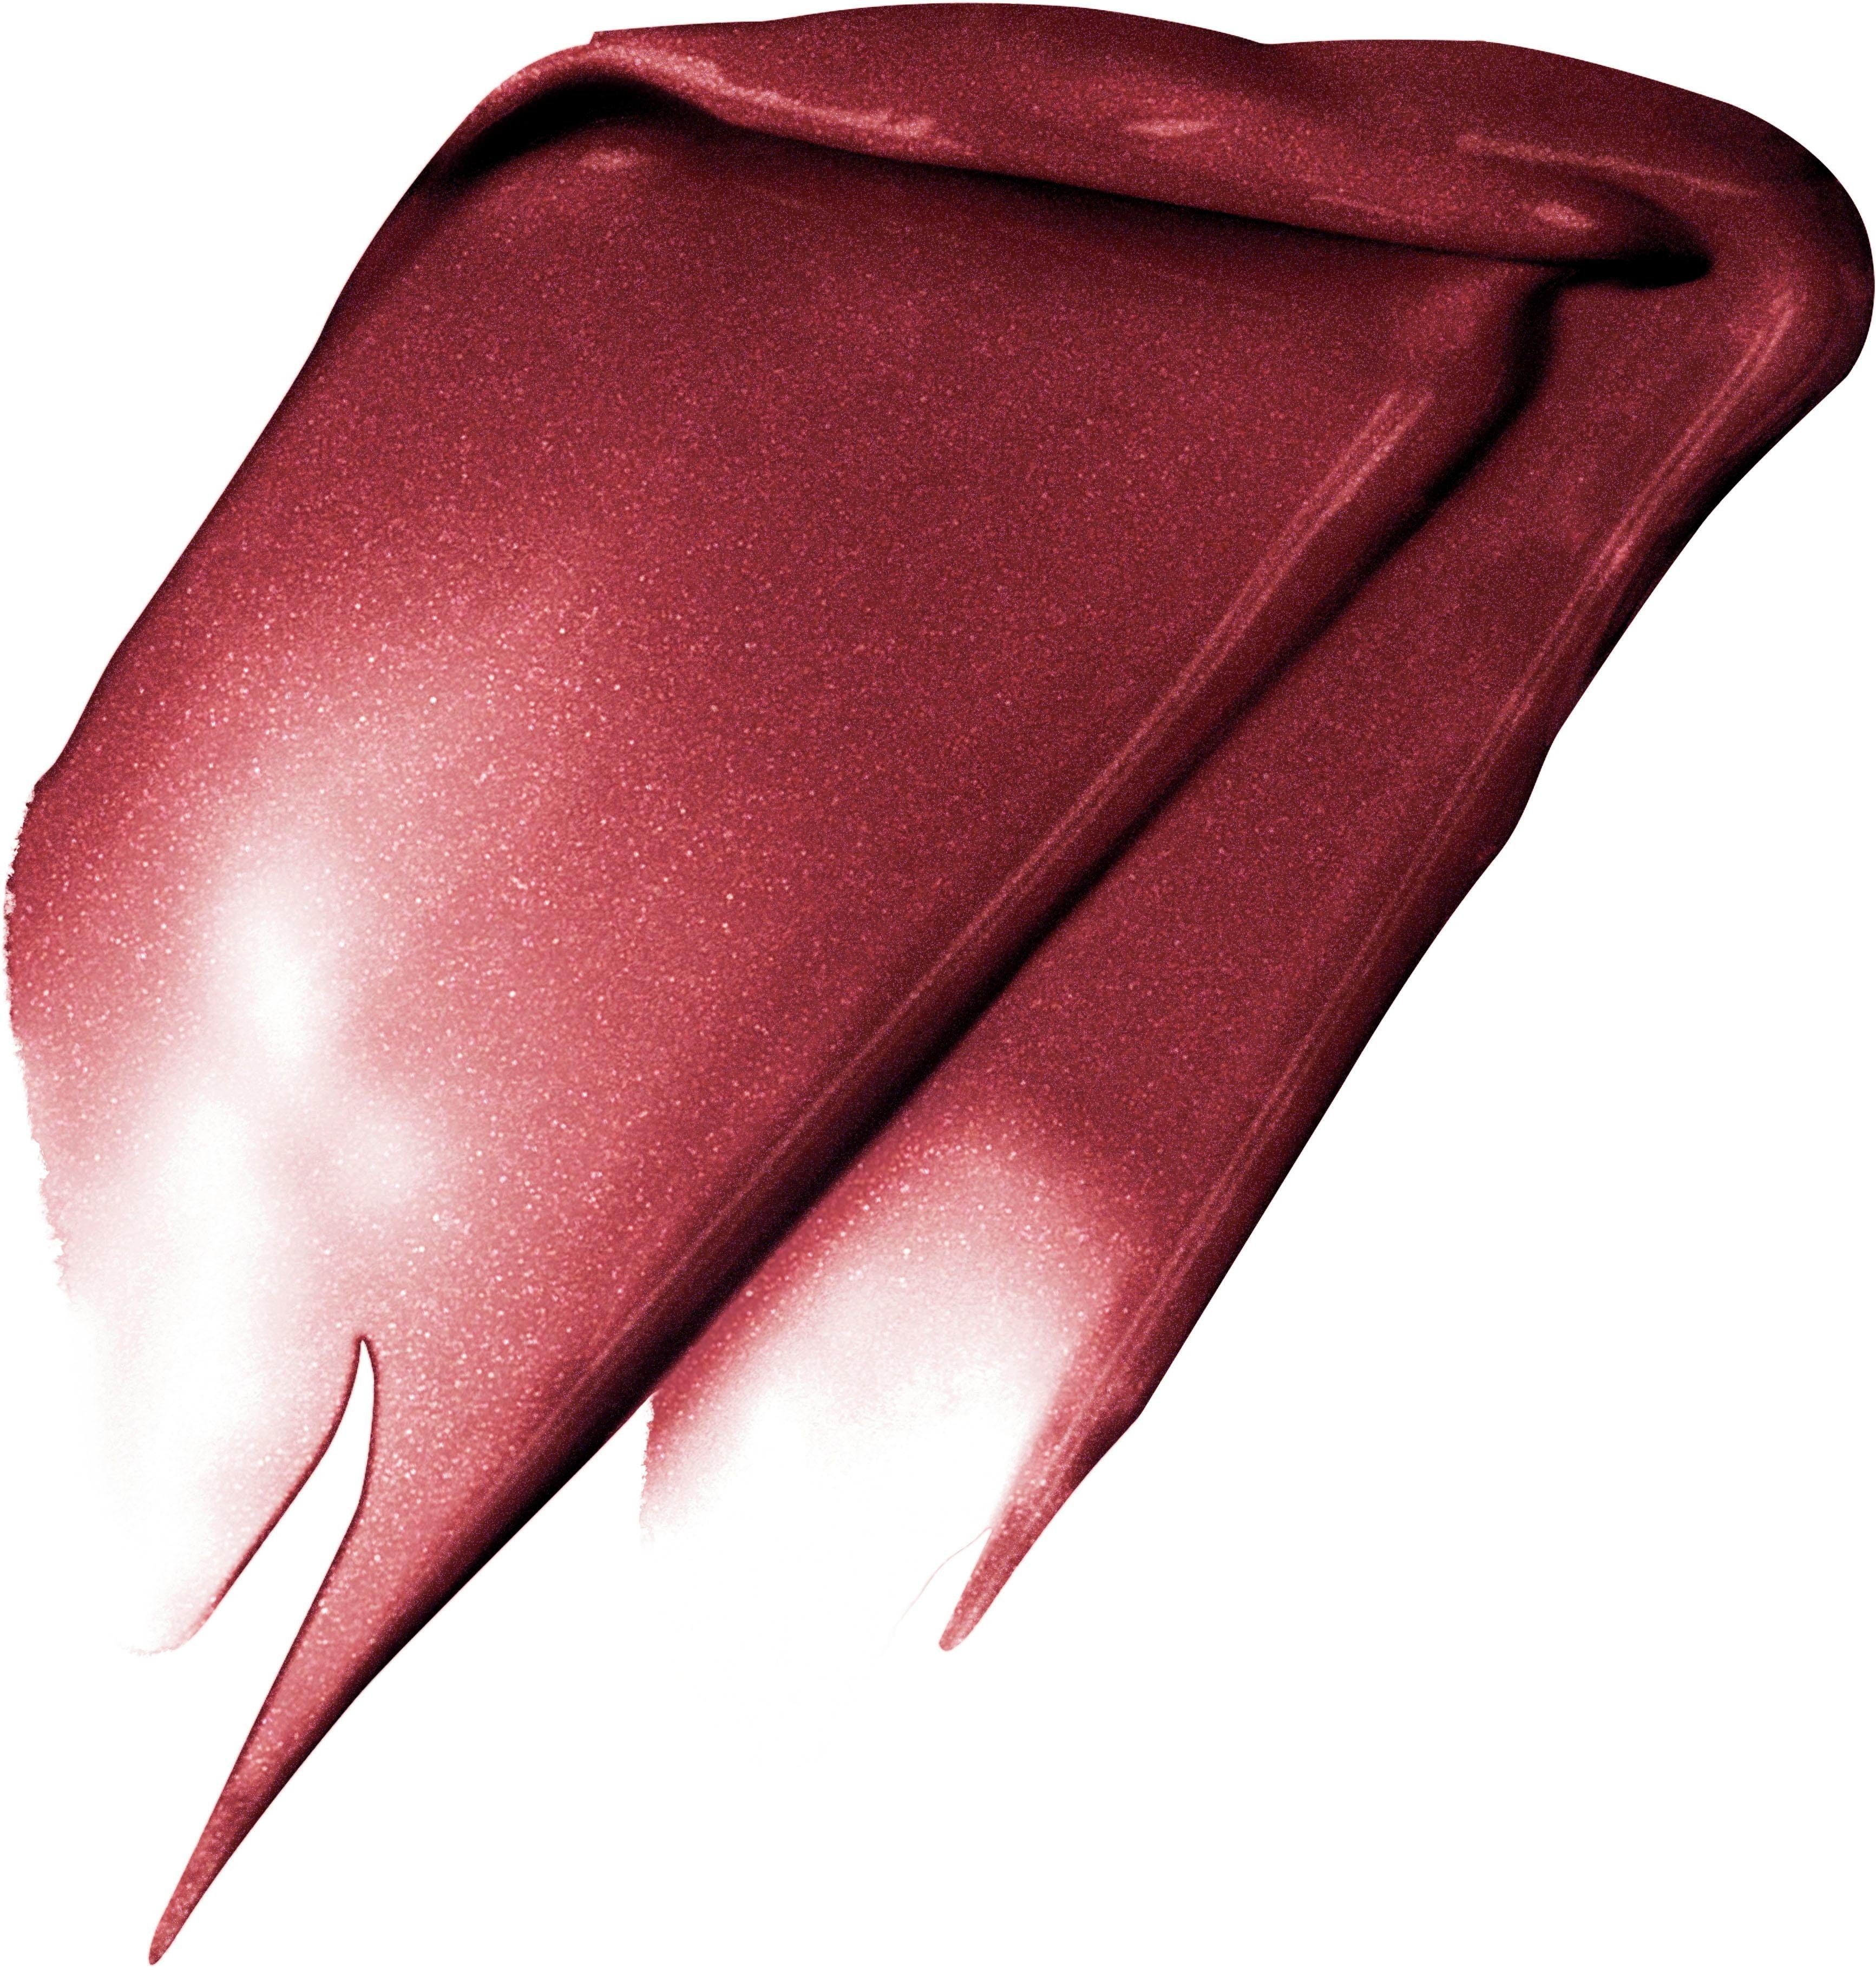 205 PROFESSIONNEL Signature L'ORÉAL PARIS Metallic I Lippenstift PARIS Fascinate L'ORÉAL Rouge